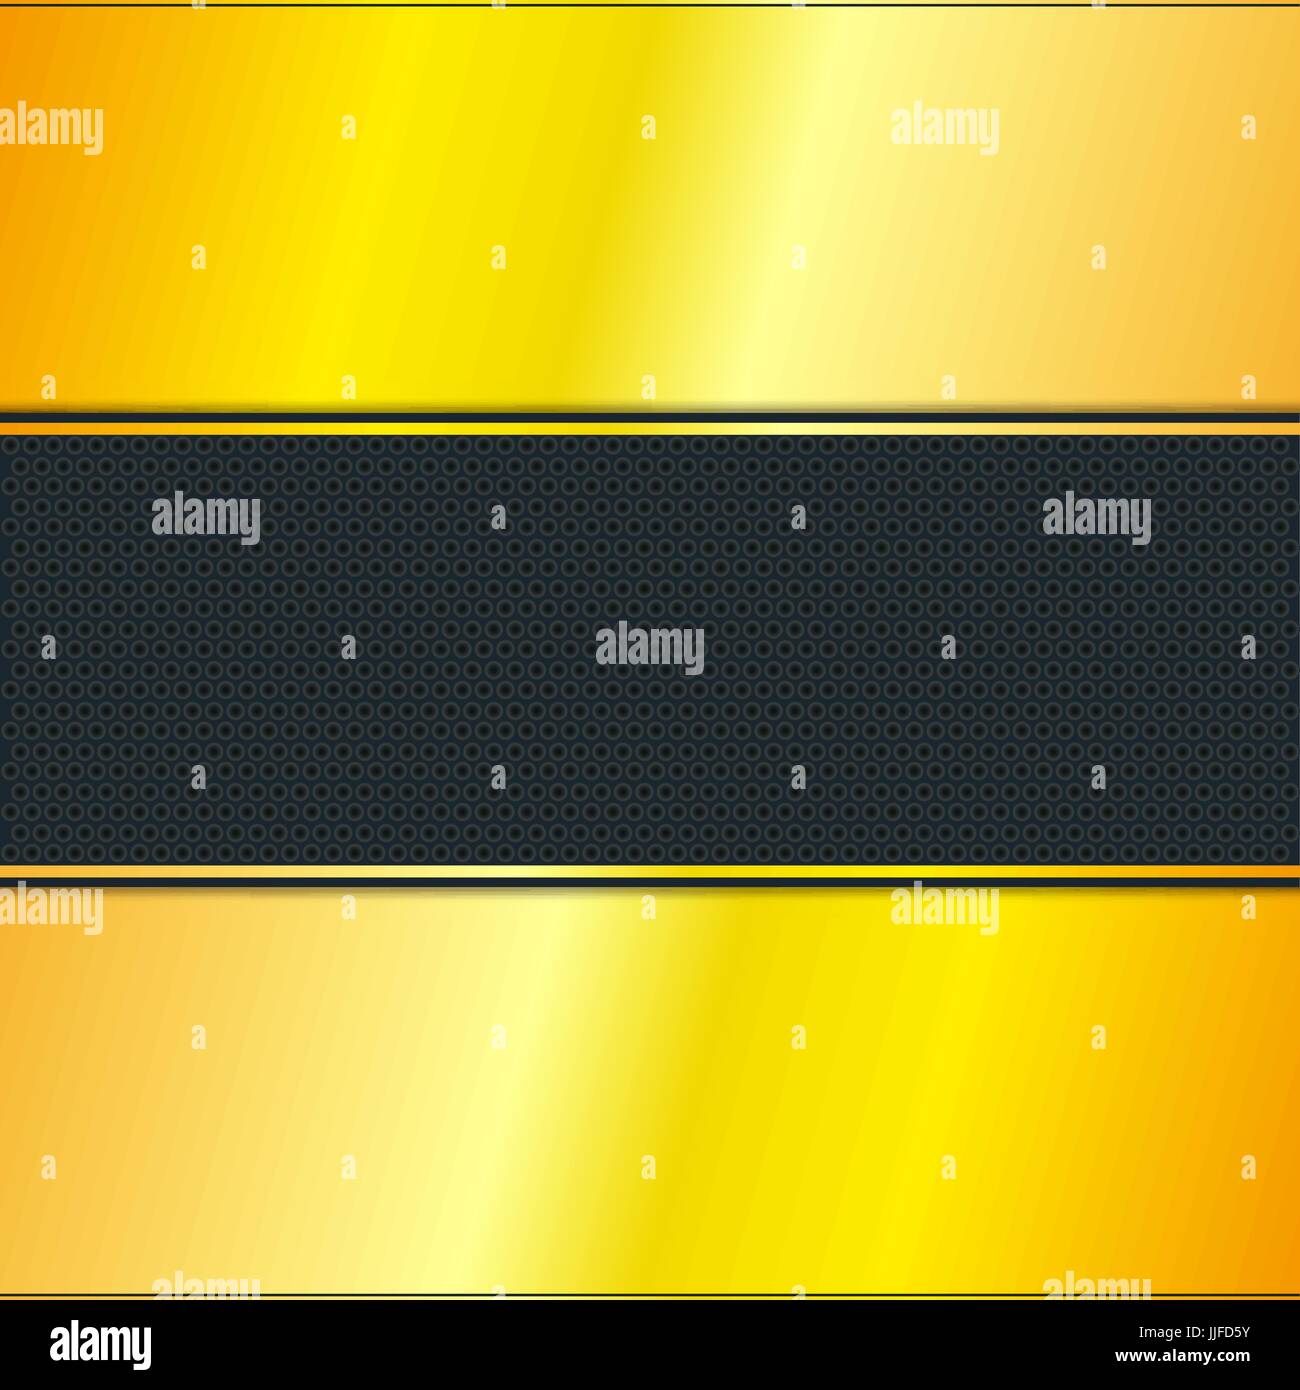 Goldene Streifen mit schwarzem Hintergrund, Vektor, Abbildung Stock Vektor